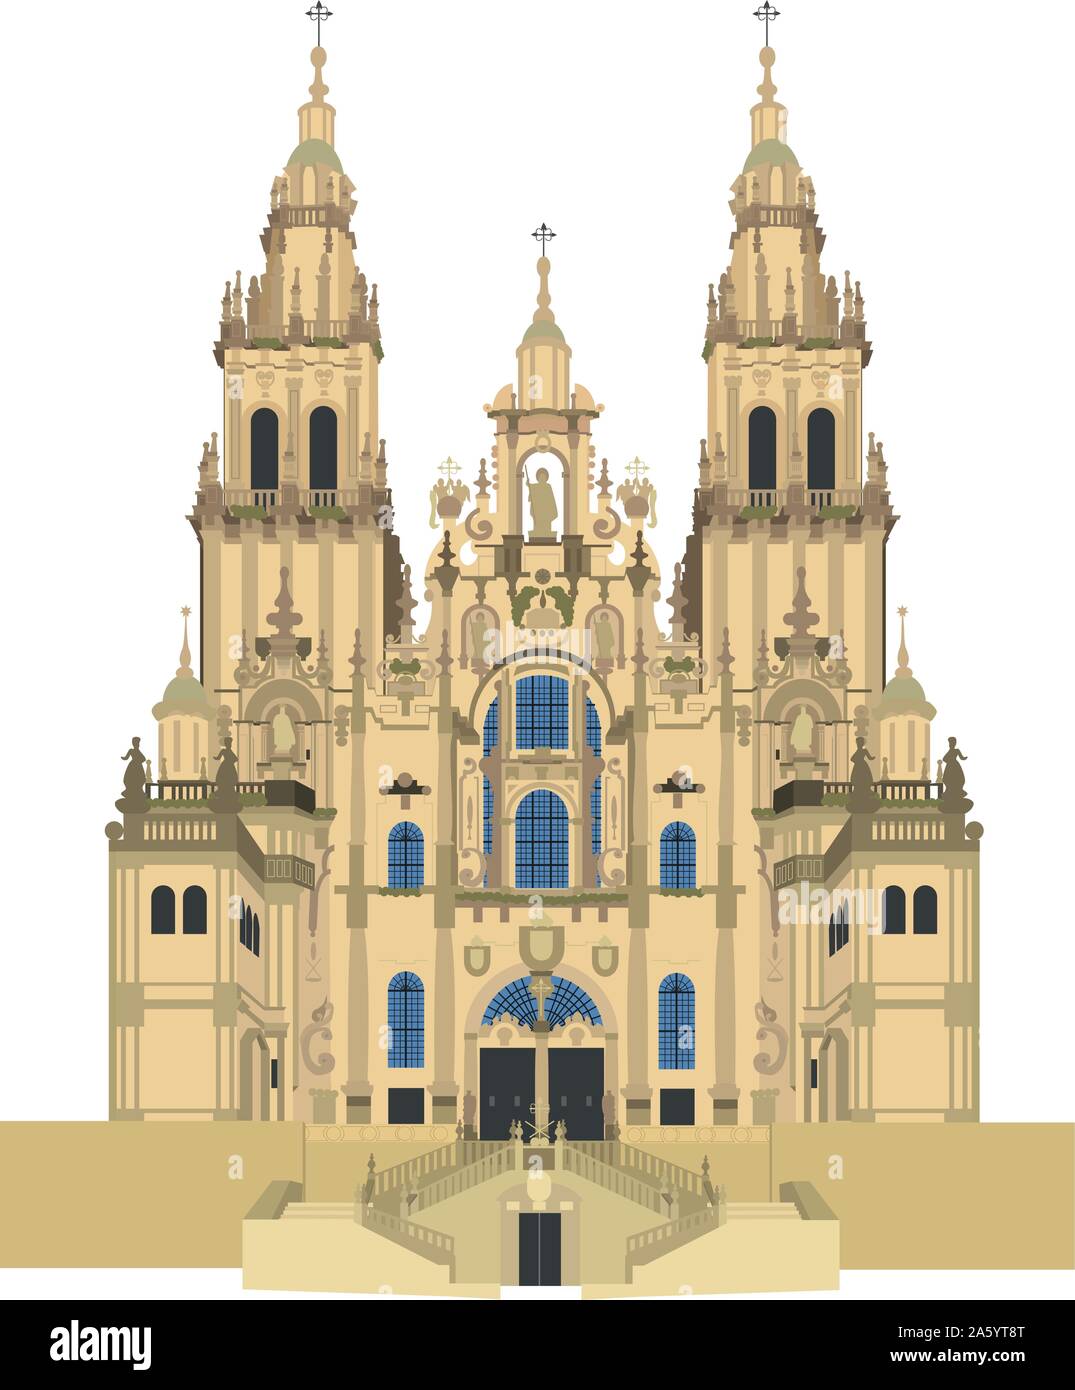 Die Kathedrale von Santiago de Compostela, Spanien. Auf weissem Hintergrund Vektor-illustration isoliert. Stock Vektor